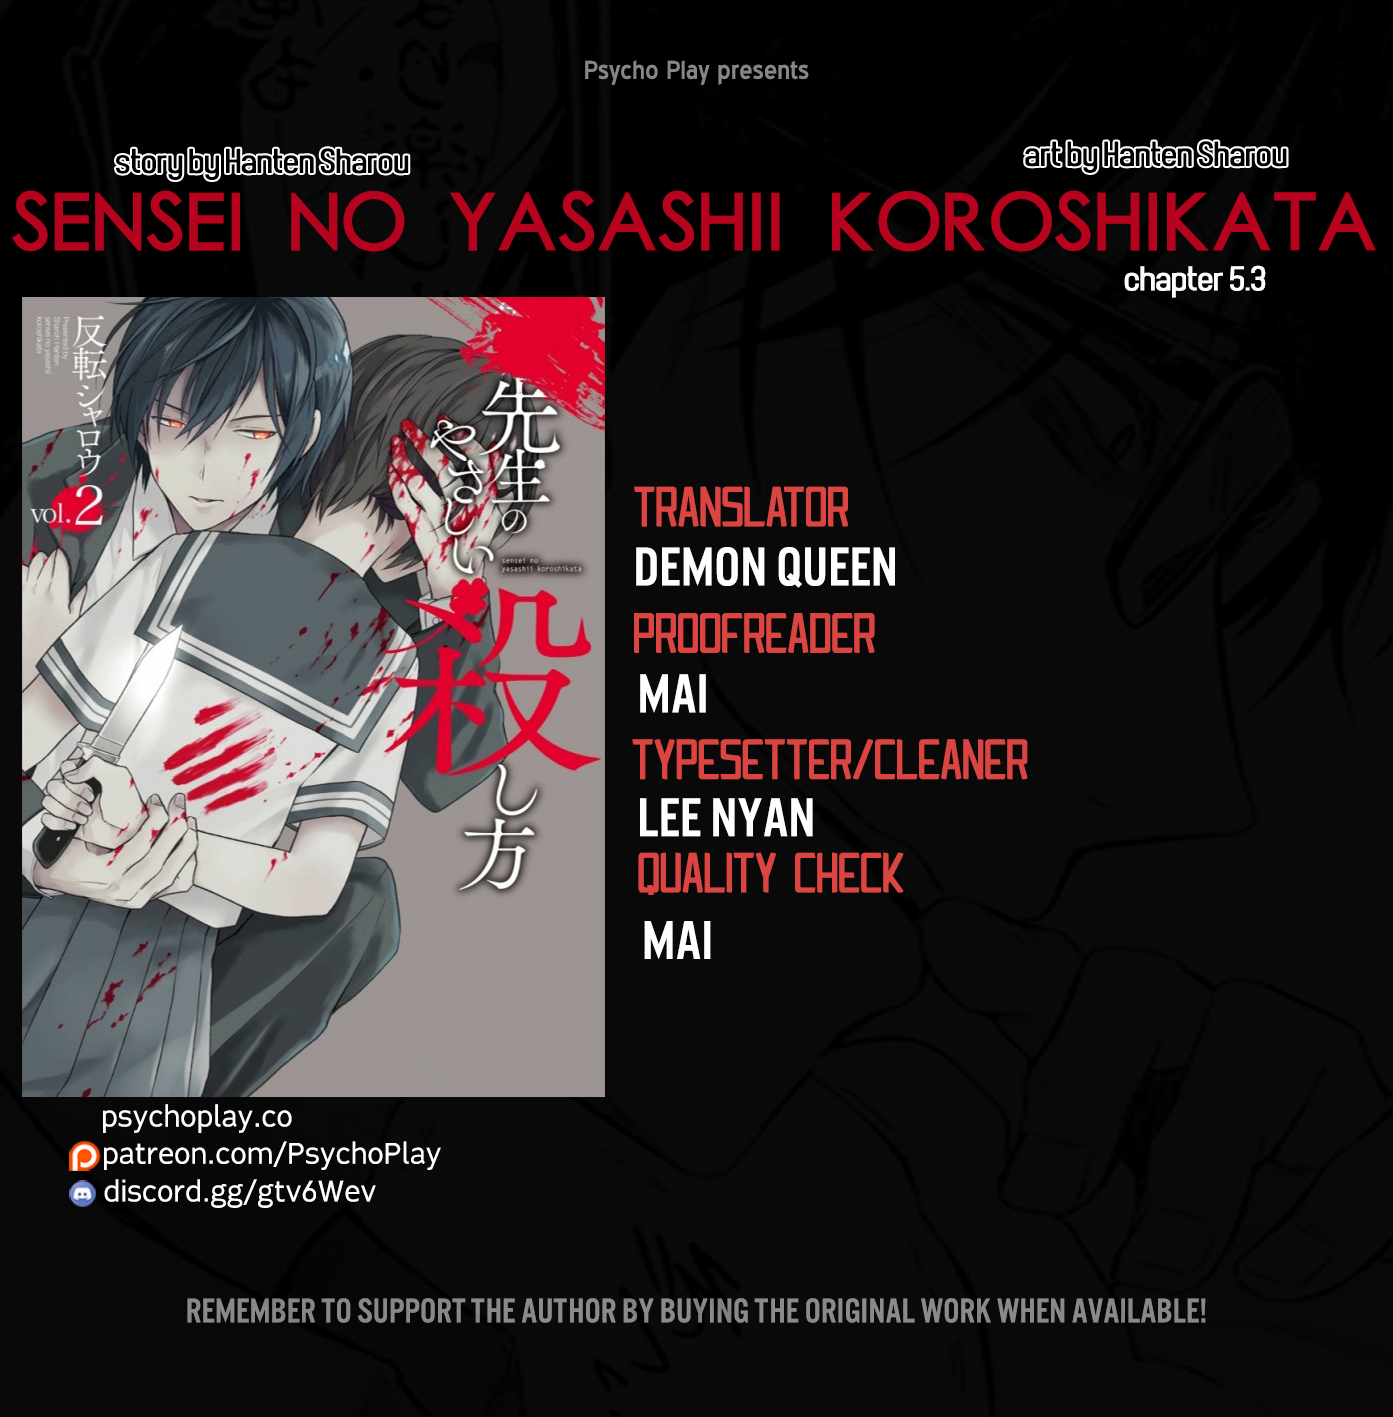 Sensei no yasashi koroshi kata Chapter 5.3